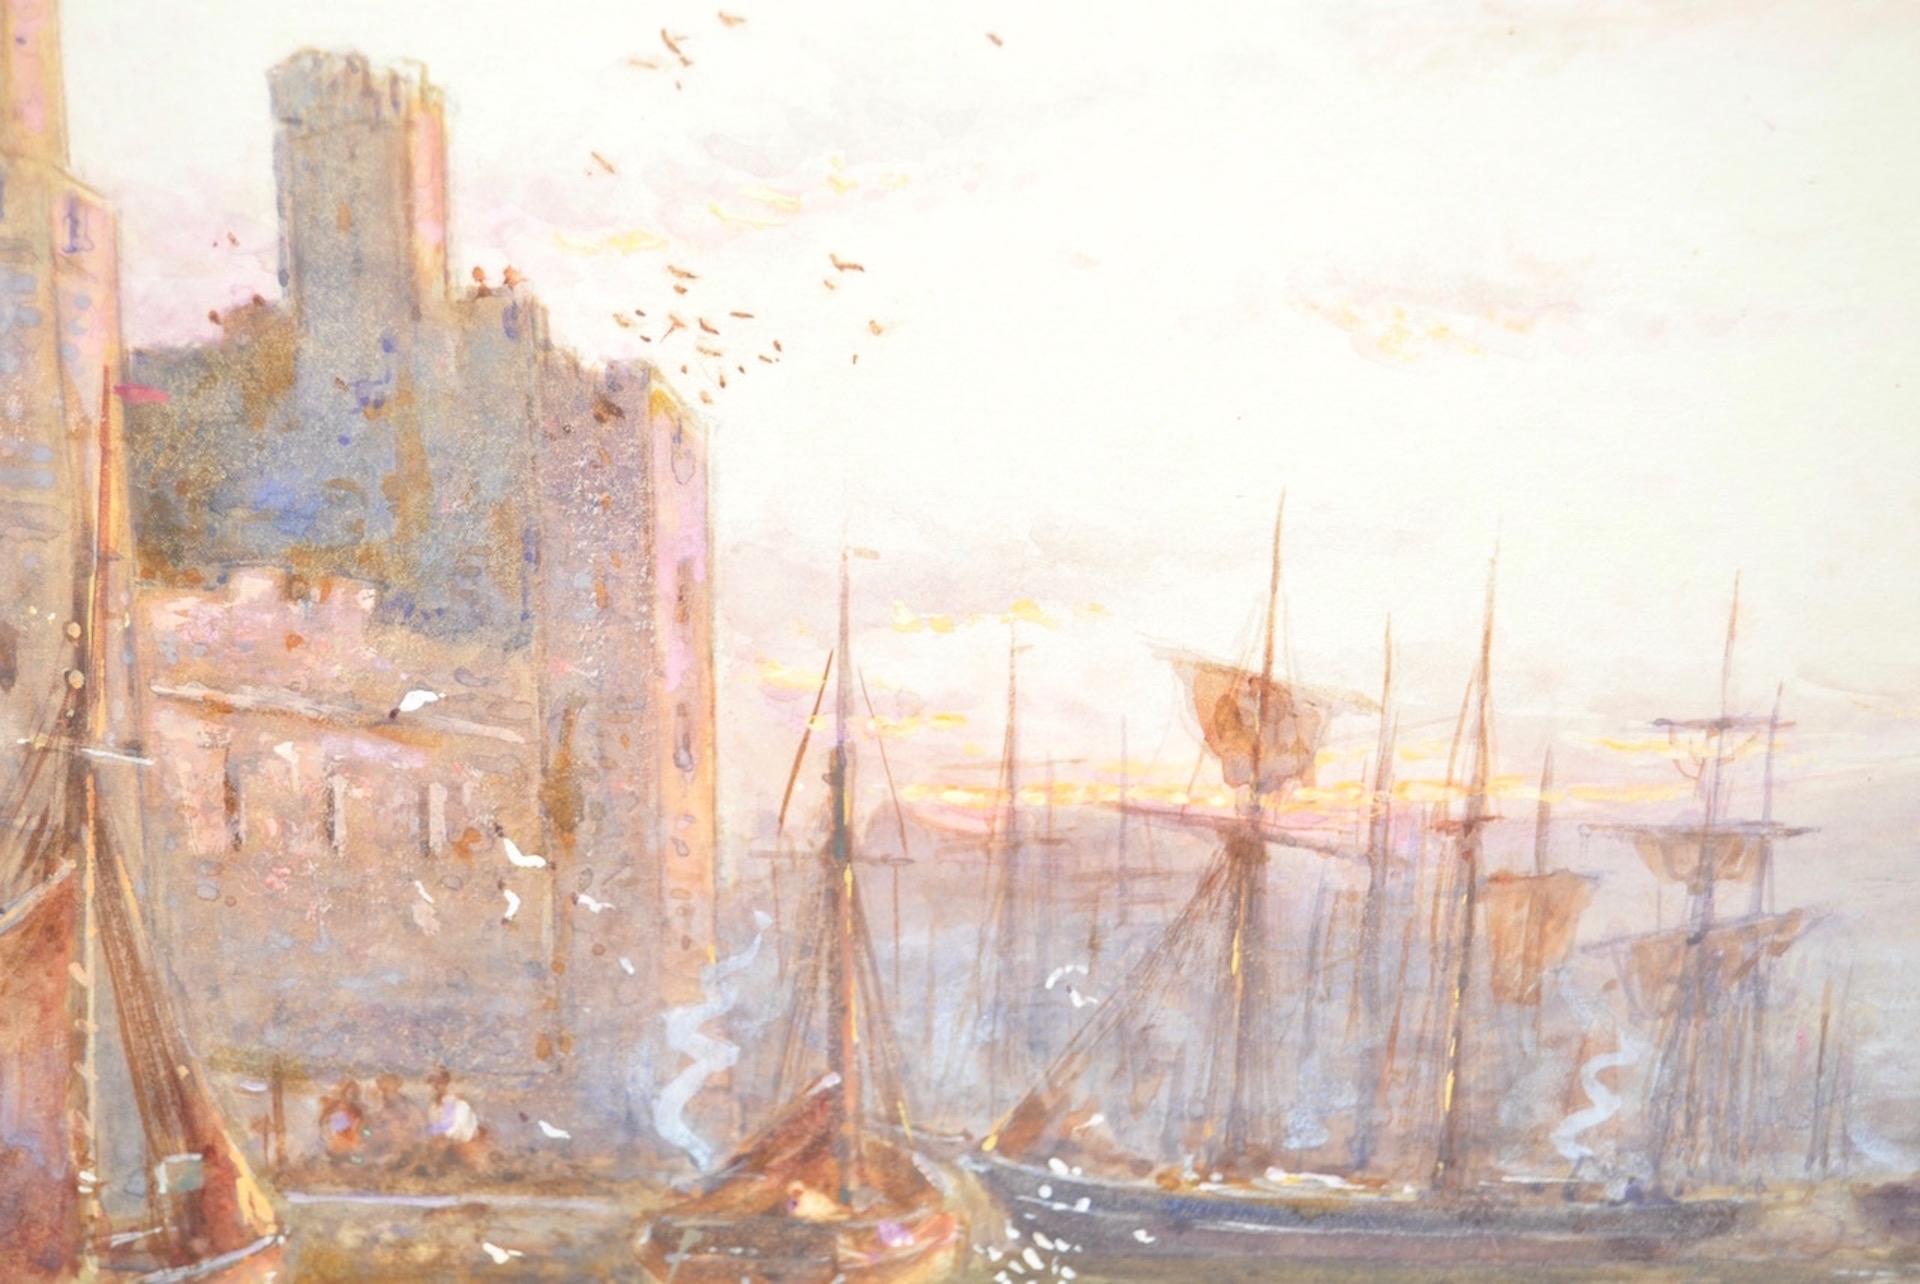 Stuart Lloyd (1875-1929) aquarelle, vers 1900

Superbe aquarelle originale réalisée par le célèbre artiste britannique Stuart Lloyd.

Une belle scène galloise avec des pêcheurs sur les rives de la rivière Seiont, surplombant le château de